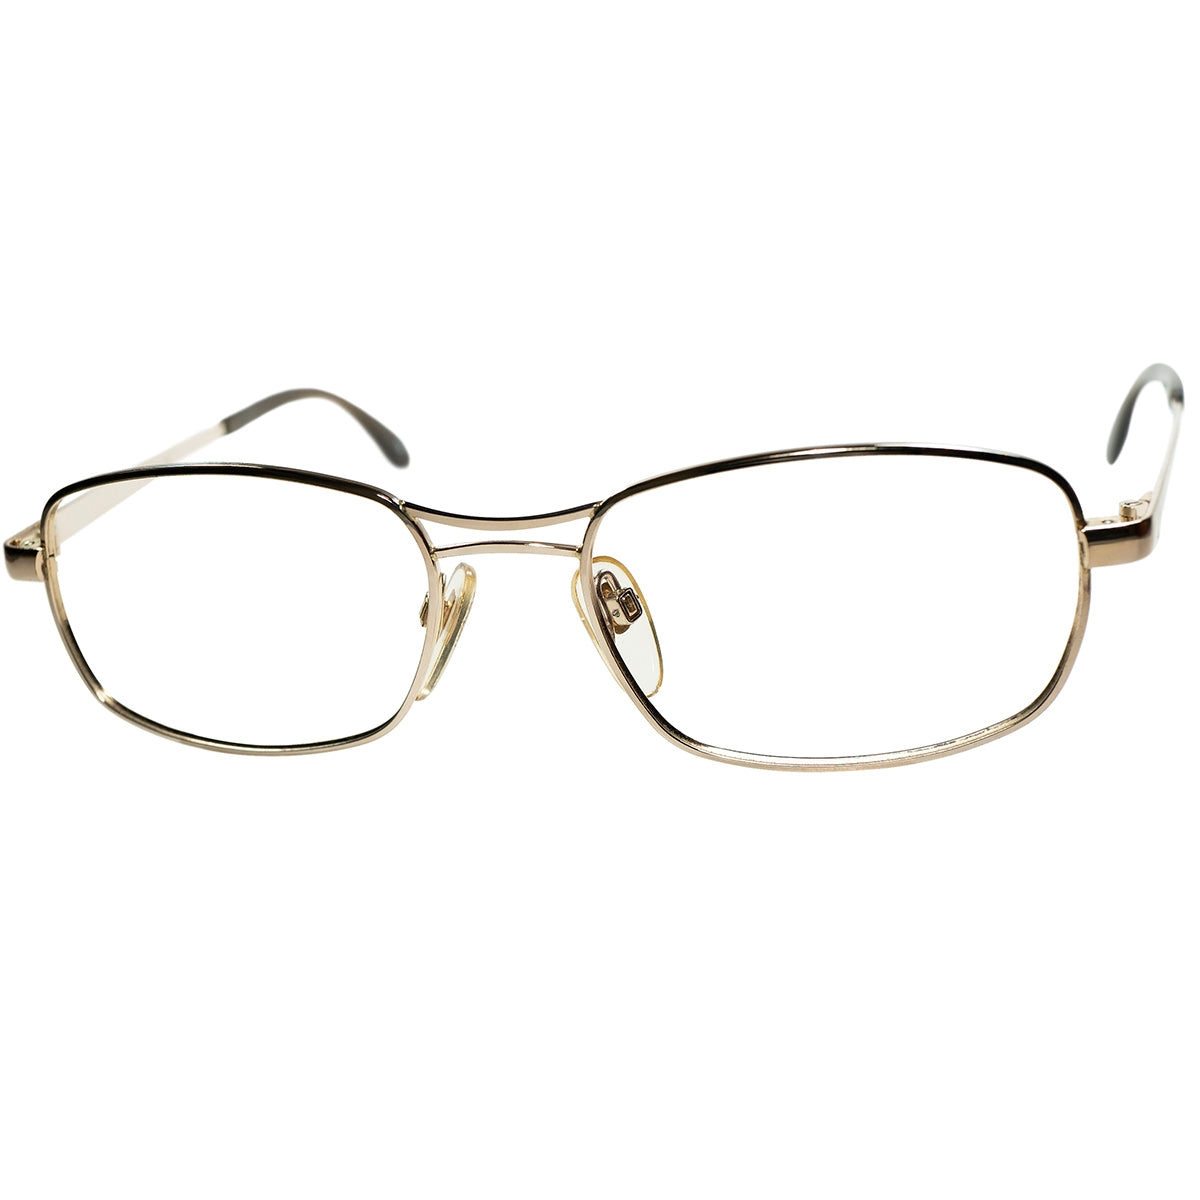 眼鏡としての段違いのポテンシャルの高さ 1960-70sデッドストック 西ドイツ製オリジナル RODENSTOCK ローデンストック LISETTE  1/20 10K金張size54/18 ビンテージ ヴィンテージ 眼鏡 メガネ 【a9228】